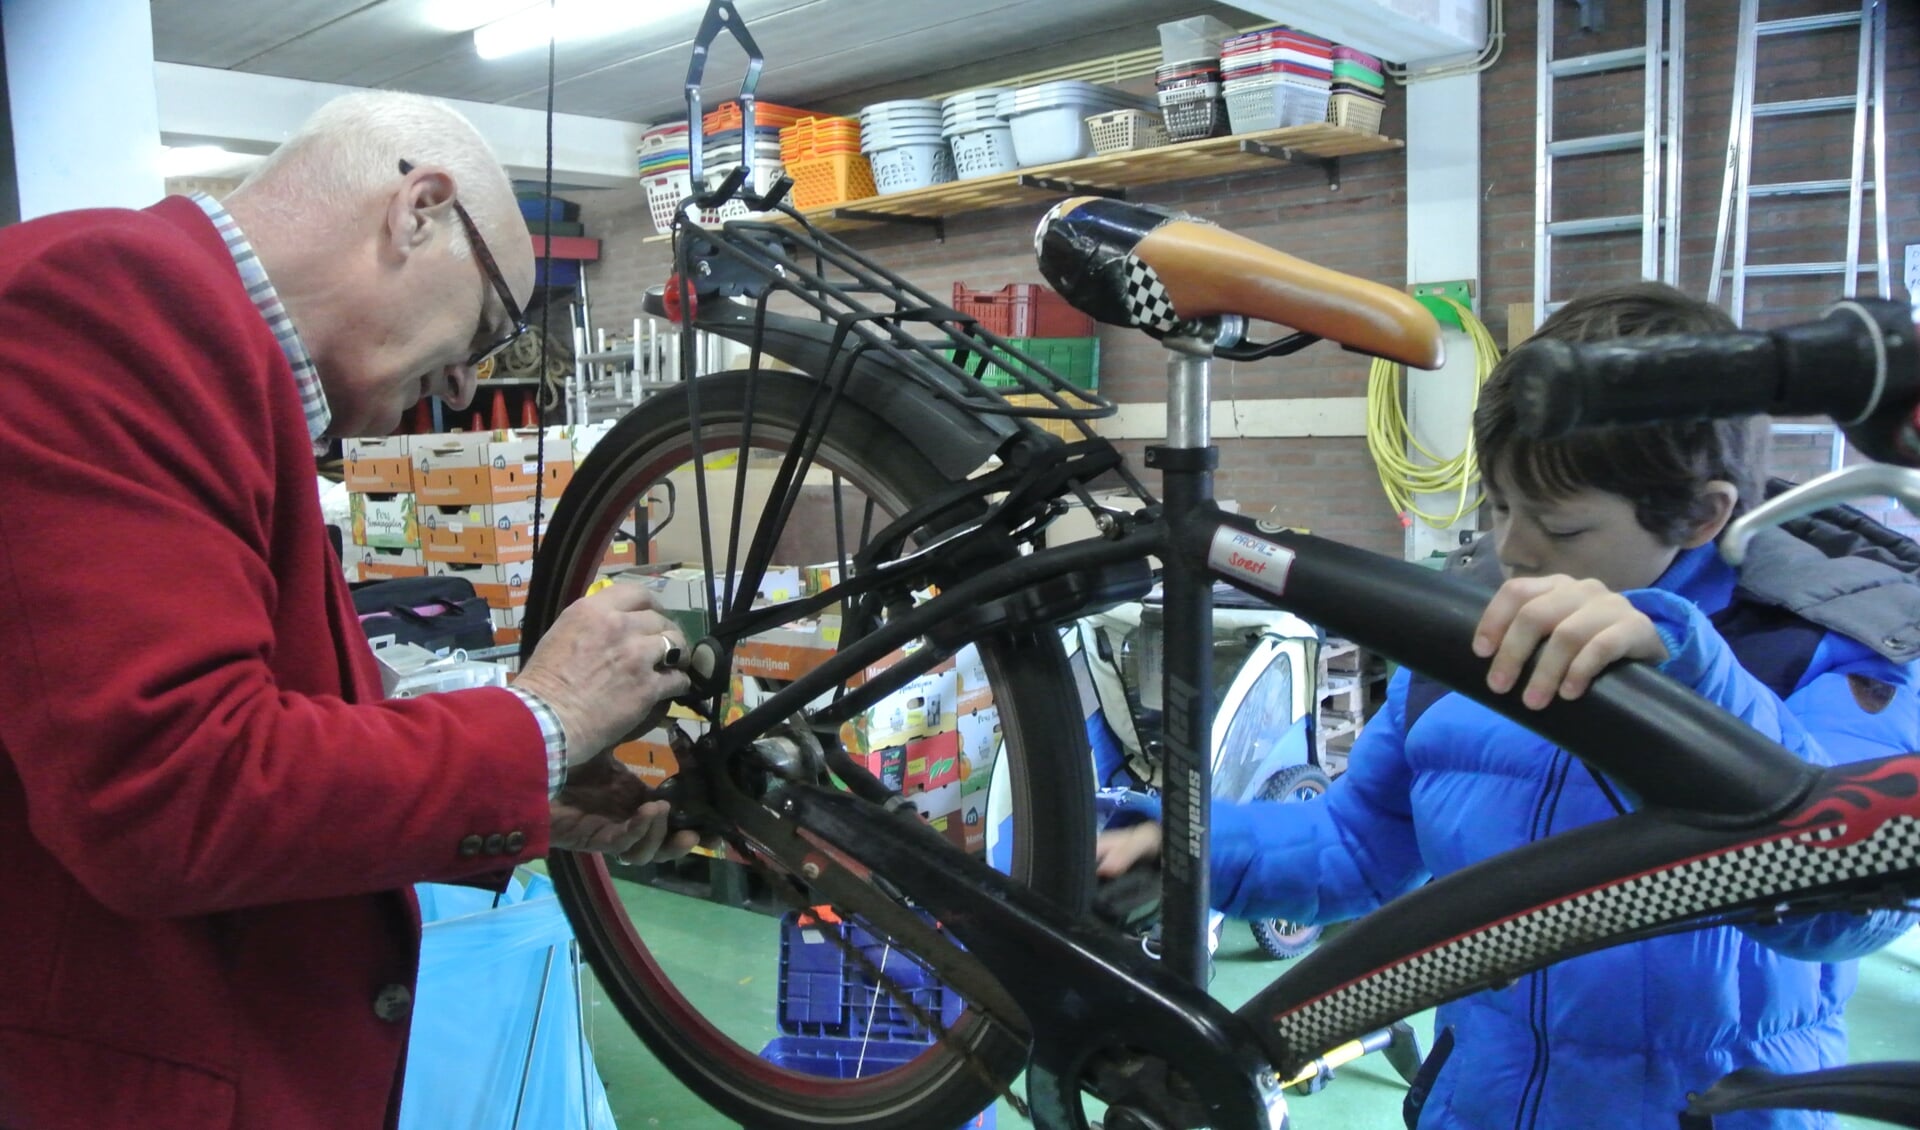 De elfjarige Leon Verwey uit Bilthoven kwam langs omdat zijn fietsketting steeds losging. Samen met reparateur Kees Stein (ook uit Bilthoven) legde hij de ketting strak. (foto Frans Poot)